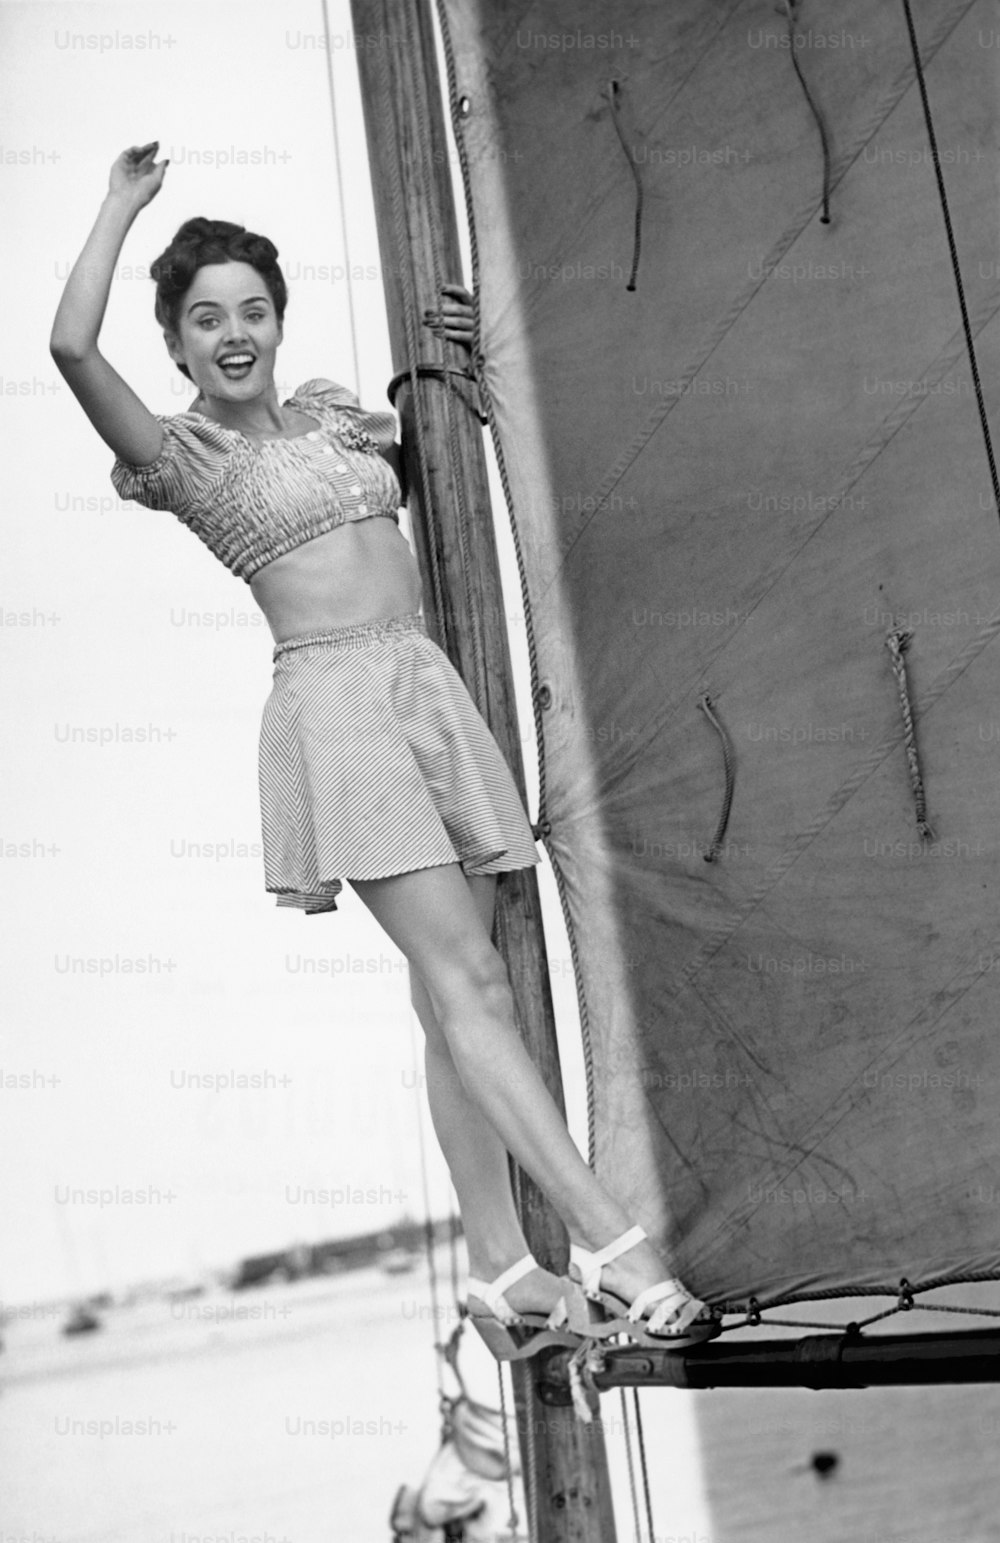 ESTADOS UNIDOS - CIRCA 1950s: Mujer joven en un velero.